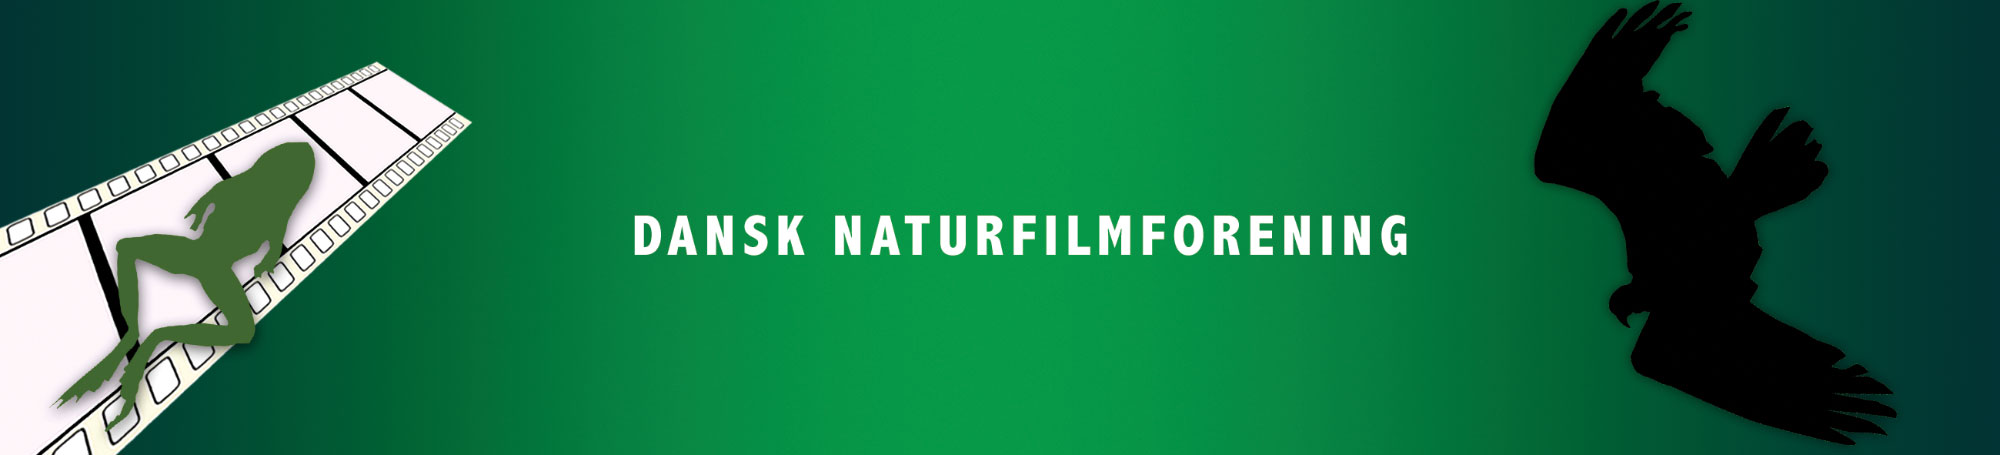 Dansk Naturfilmforening